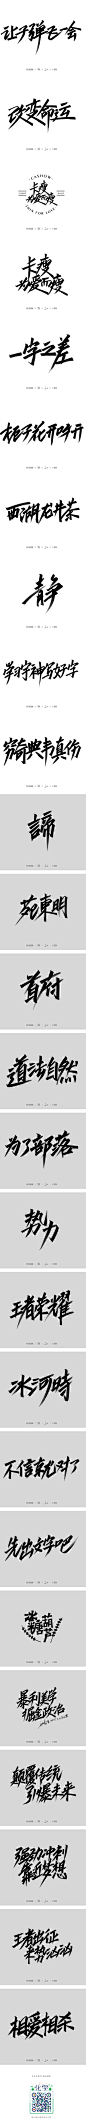 刷字一拔-字体传奇网-中国首个字体品牌设计师交流网